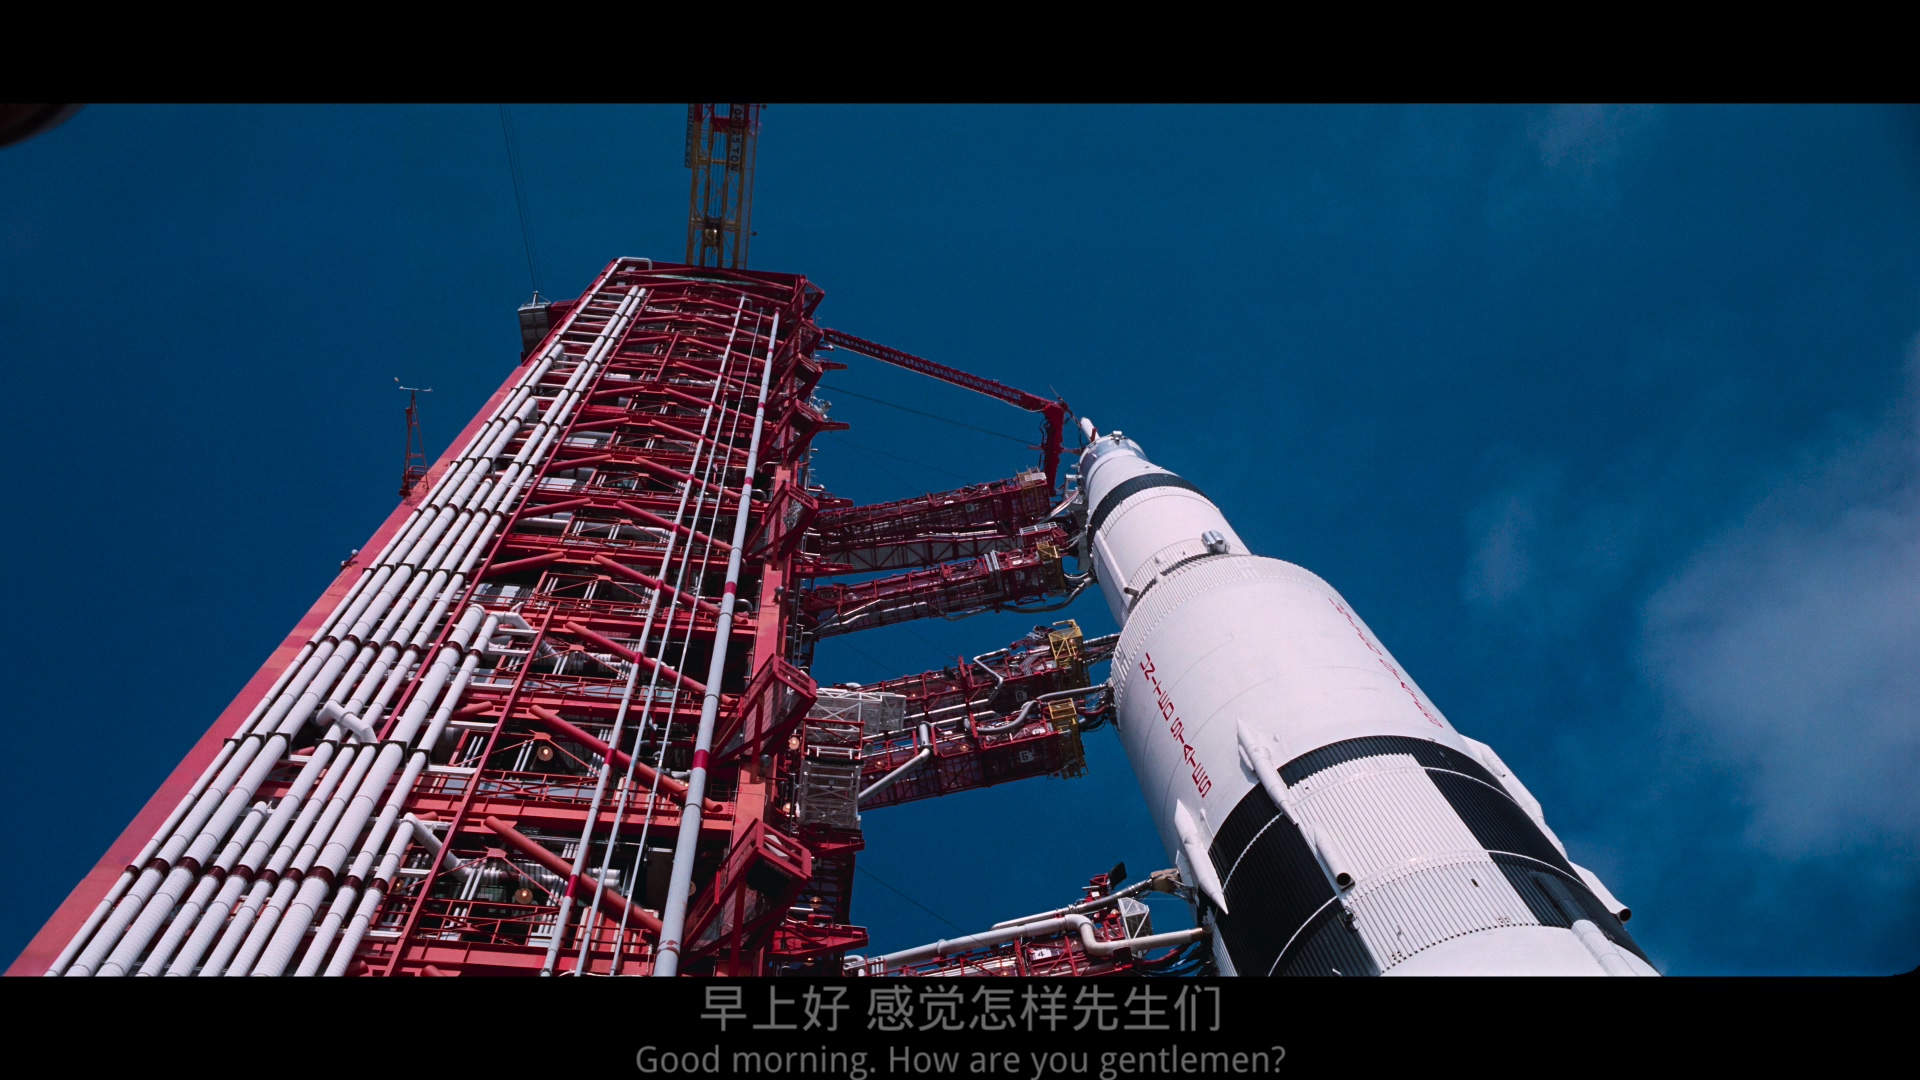 阿波罗11号/阿波罗登月[DIY简繁/简繁双语字幕] 4K UHD原盘 珍贵影像画质一流 Apollo 11 2019 2160p UHD Blu-ray HEVC DTS-HD MA 5.1-wezjh@OurBits    [70.83 GB  ]-4.jpg